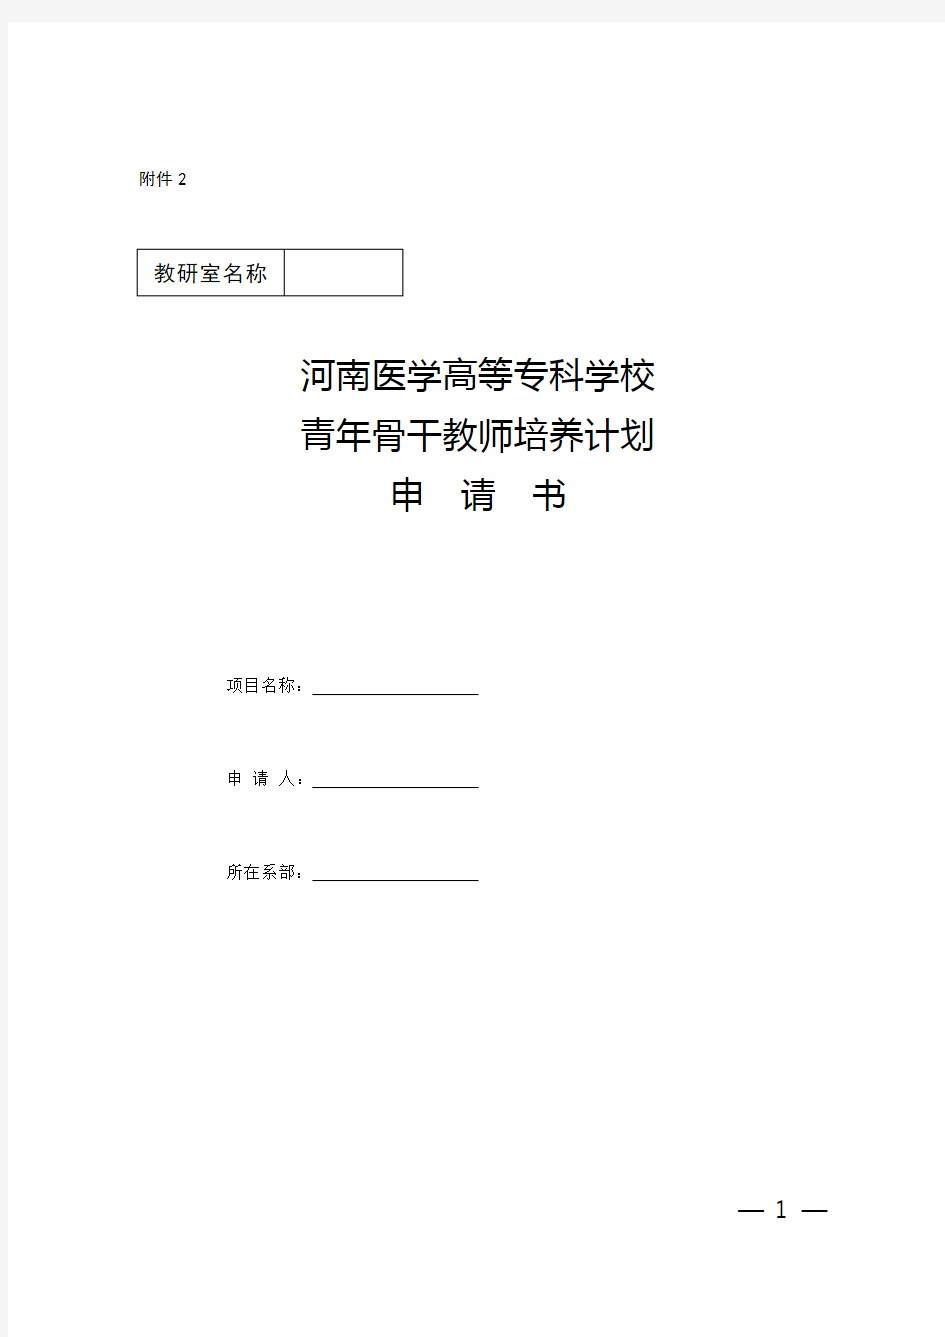 河南医学高等专科学校青年骨干教师计划申请书